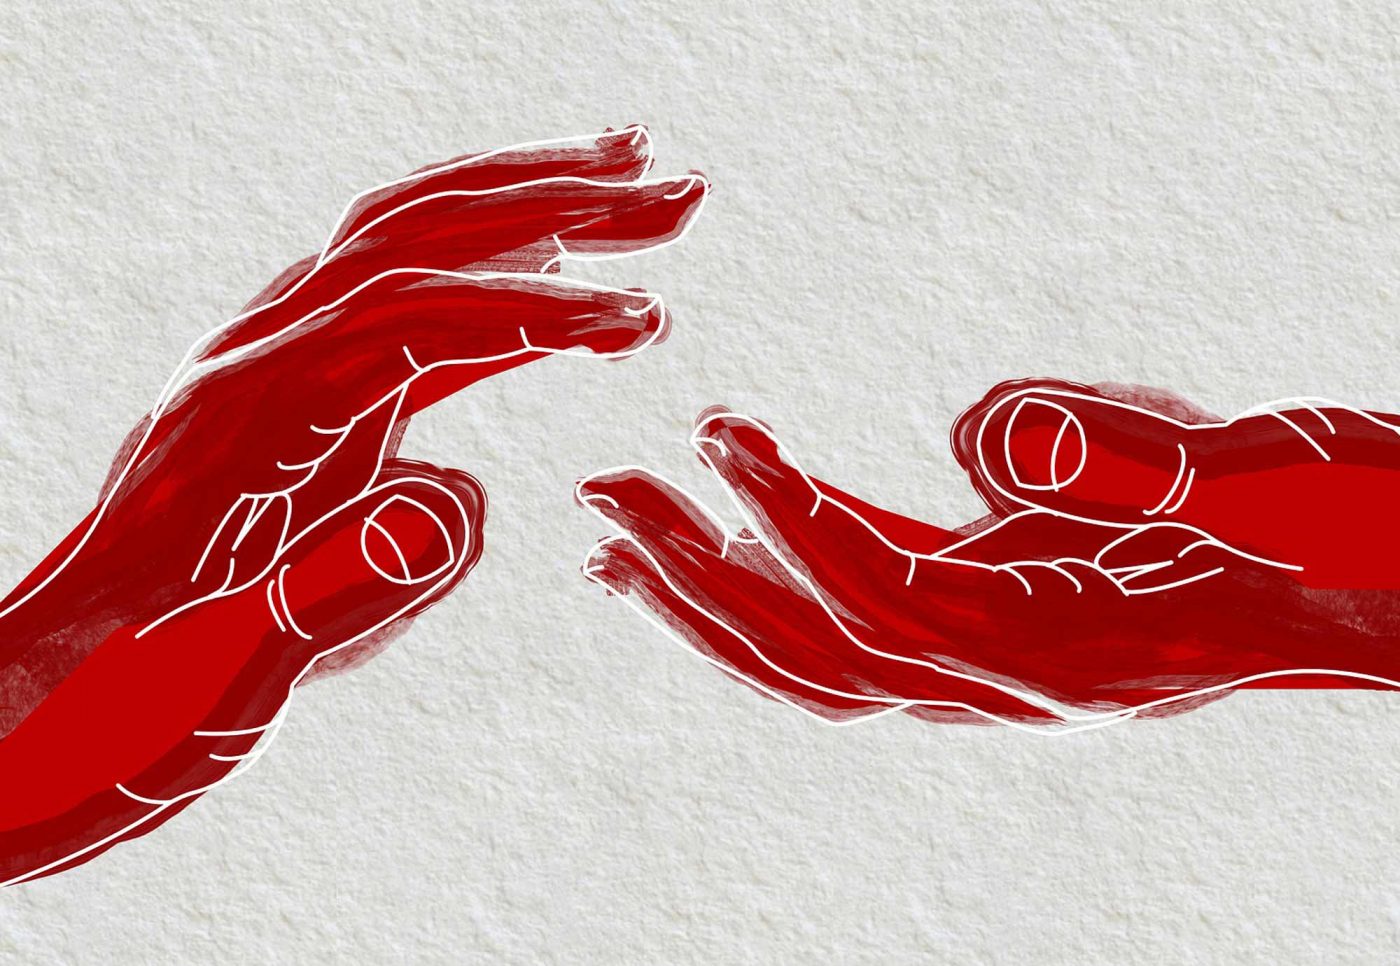 "Die Hand, die Petrus dem Mann reicht, ist ein Bild für die Unterstützung, die dieser braucht, um sein Leben selber in die Hand nehmen zu können." Foto: pixabay